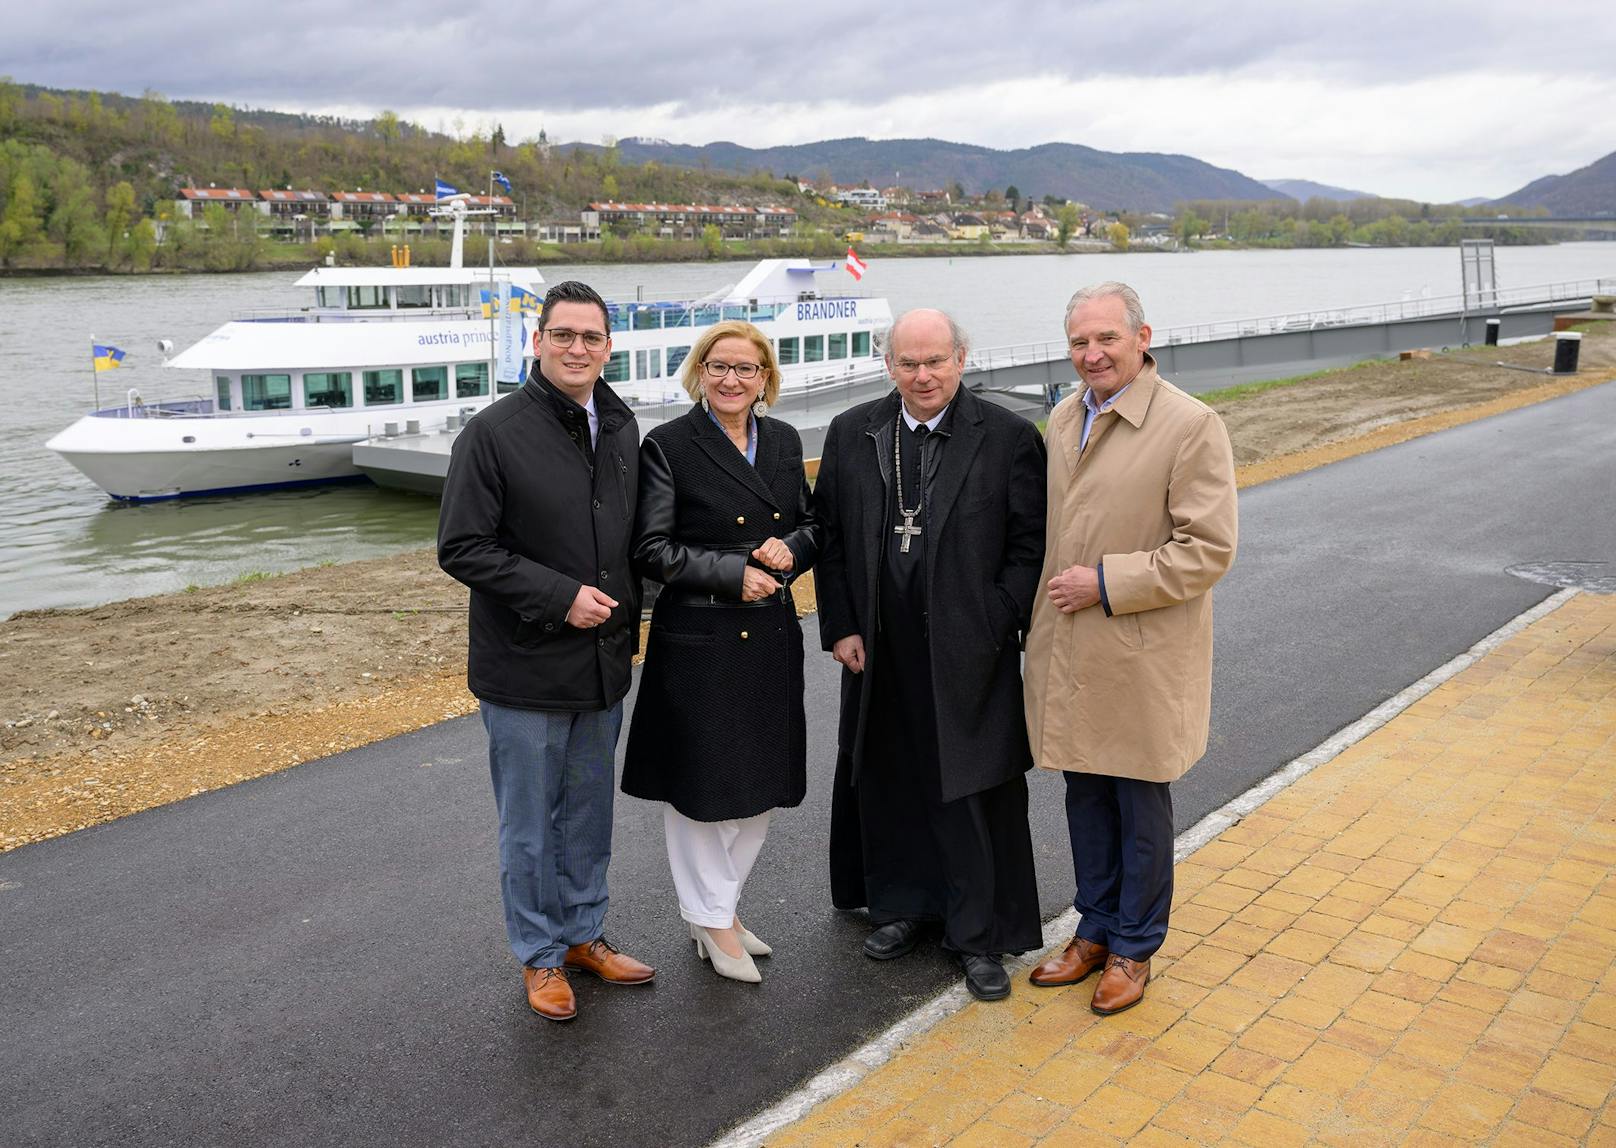 Melks Hafenspitz ist rechtzeitig zum Tourismusstart fertig geworden. Landeshauptfrau Johanna Mikl-Leitner mit Ehren- und Festgästen bei der Eröffnung.